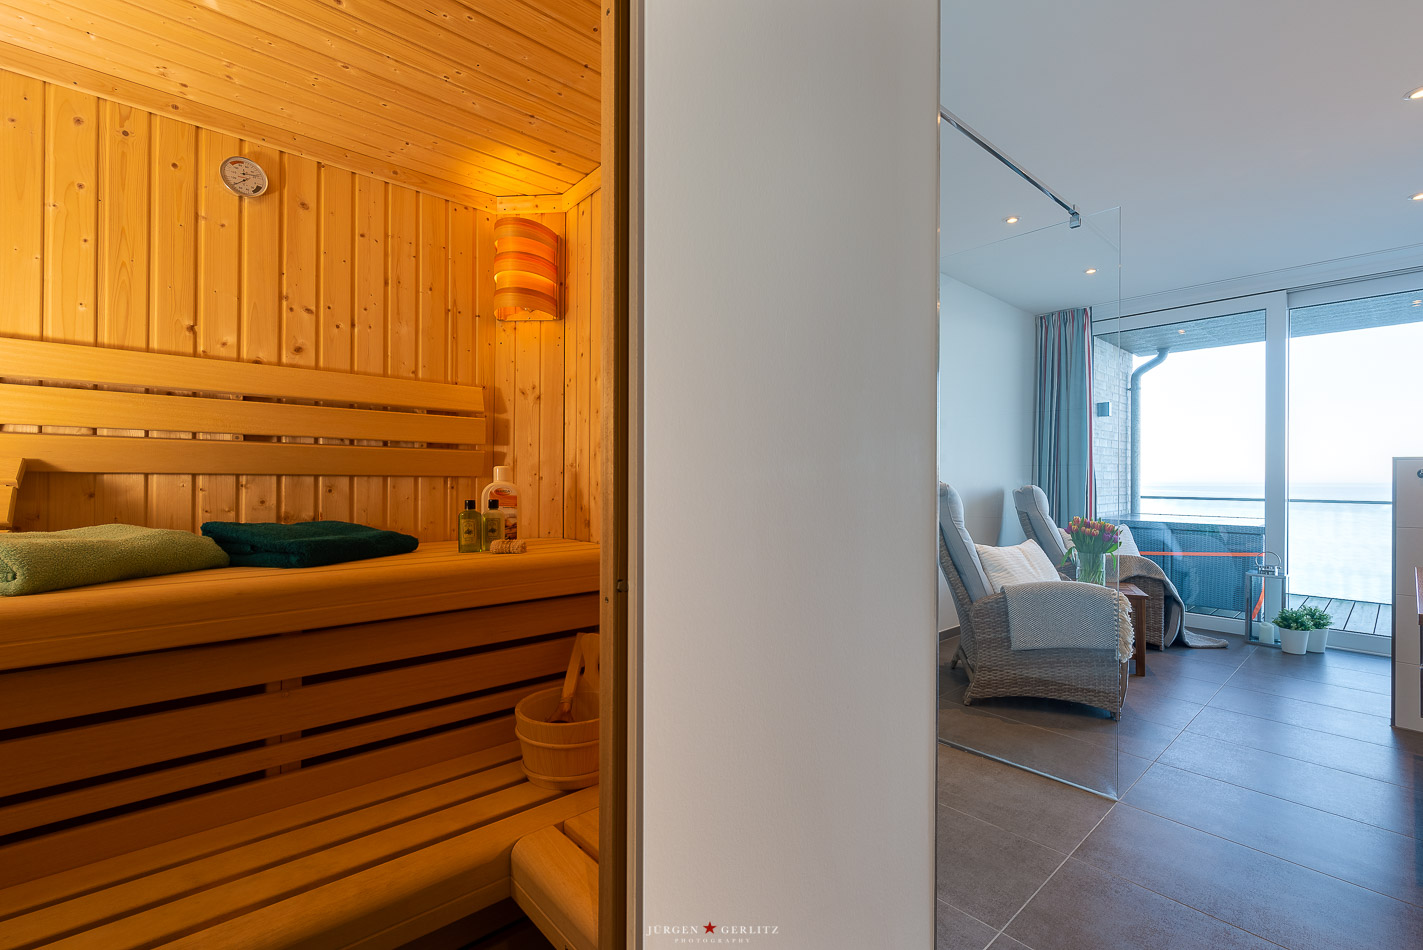 Apartment Upper Deck- großes Badezimmer mit Sauna